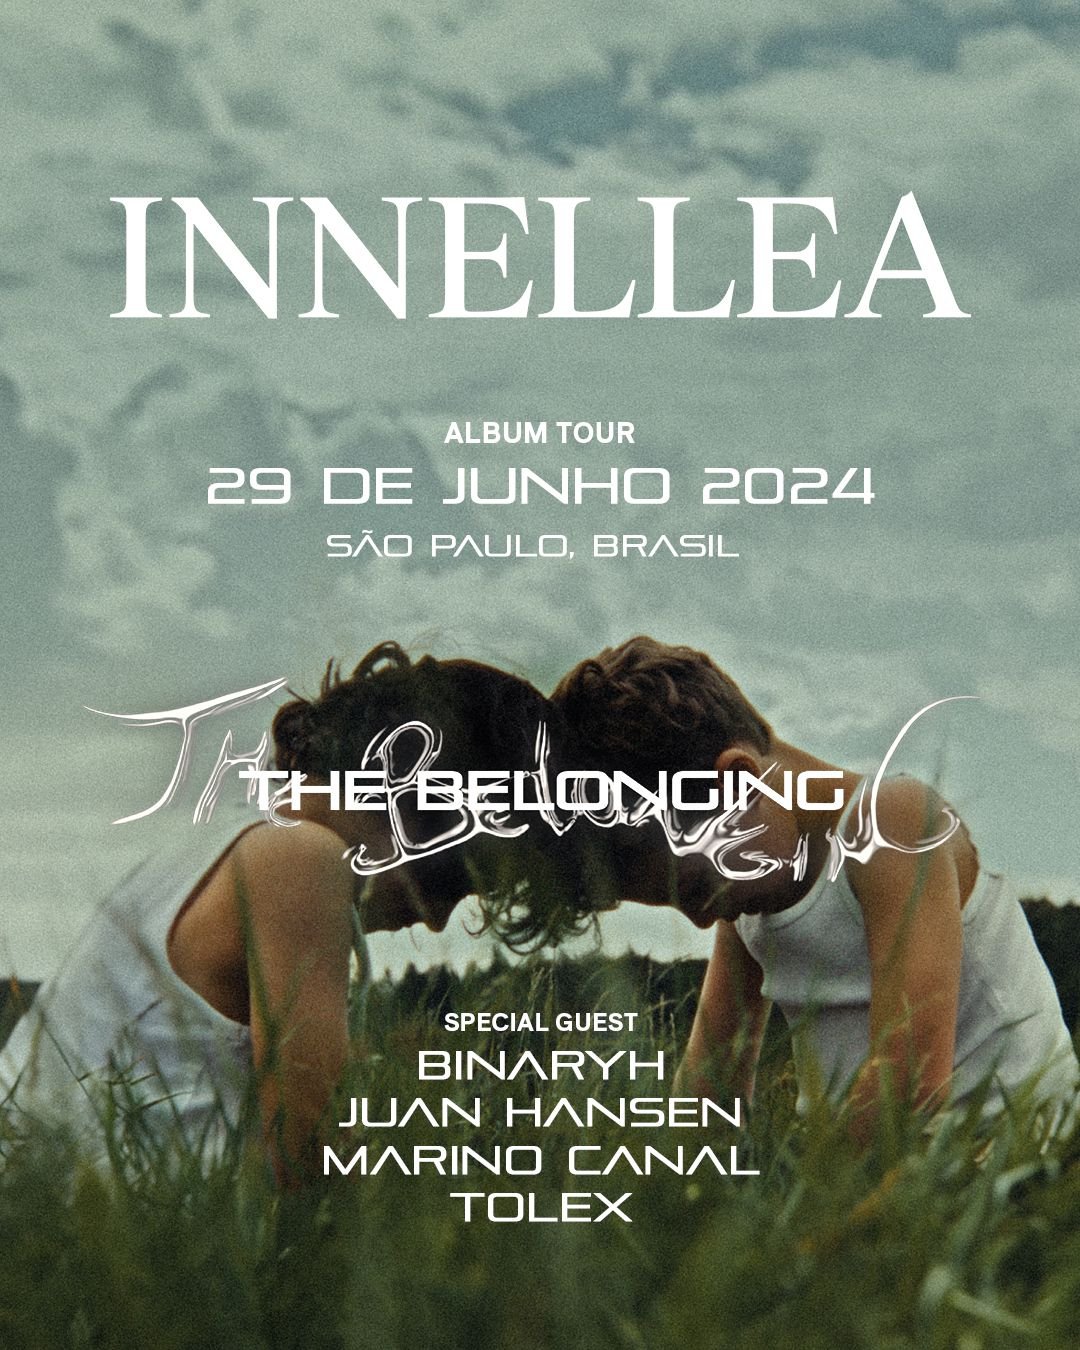 INNELLEA anuncia os convidados especiais da turne The Belonging em Sao Paulo POP CYBER